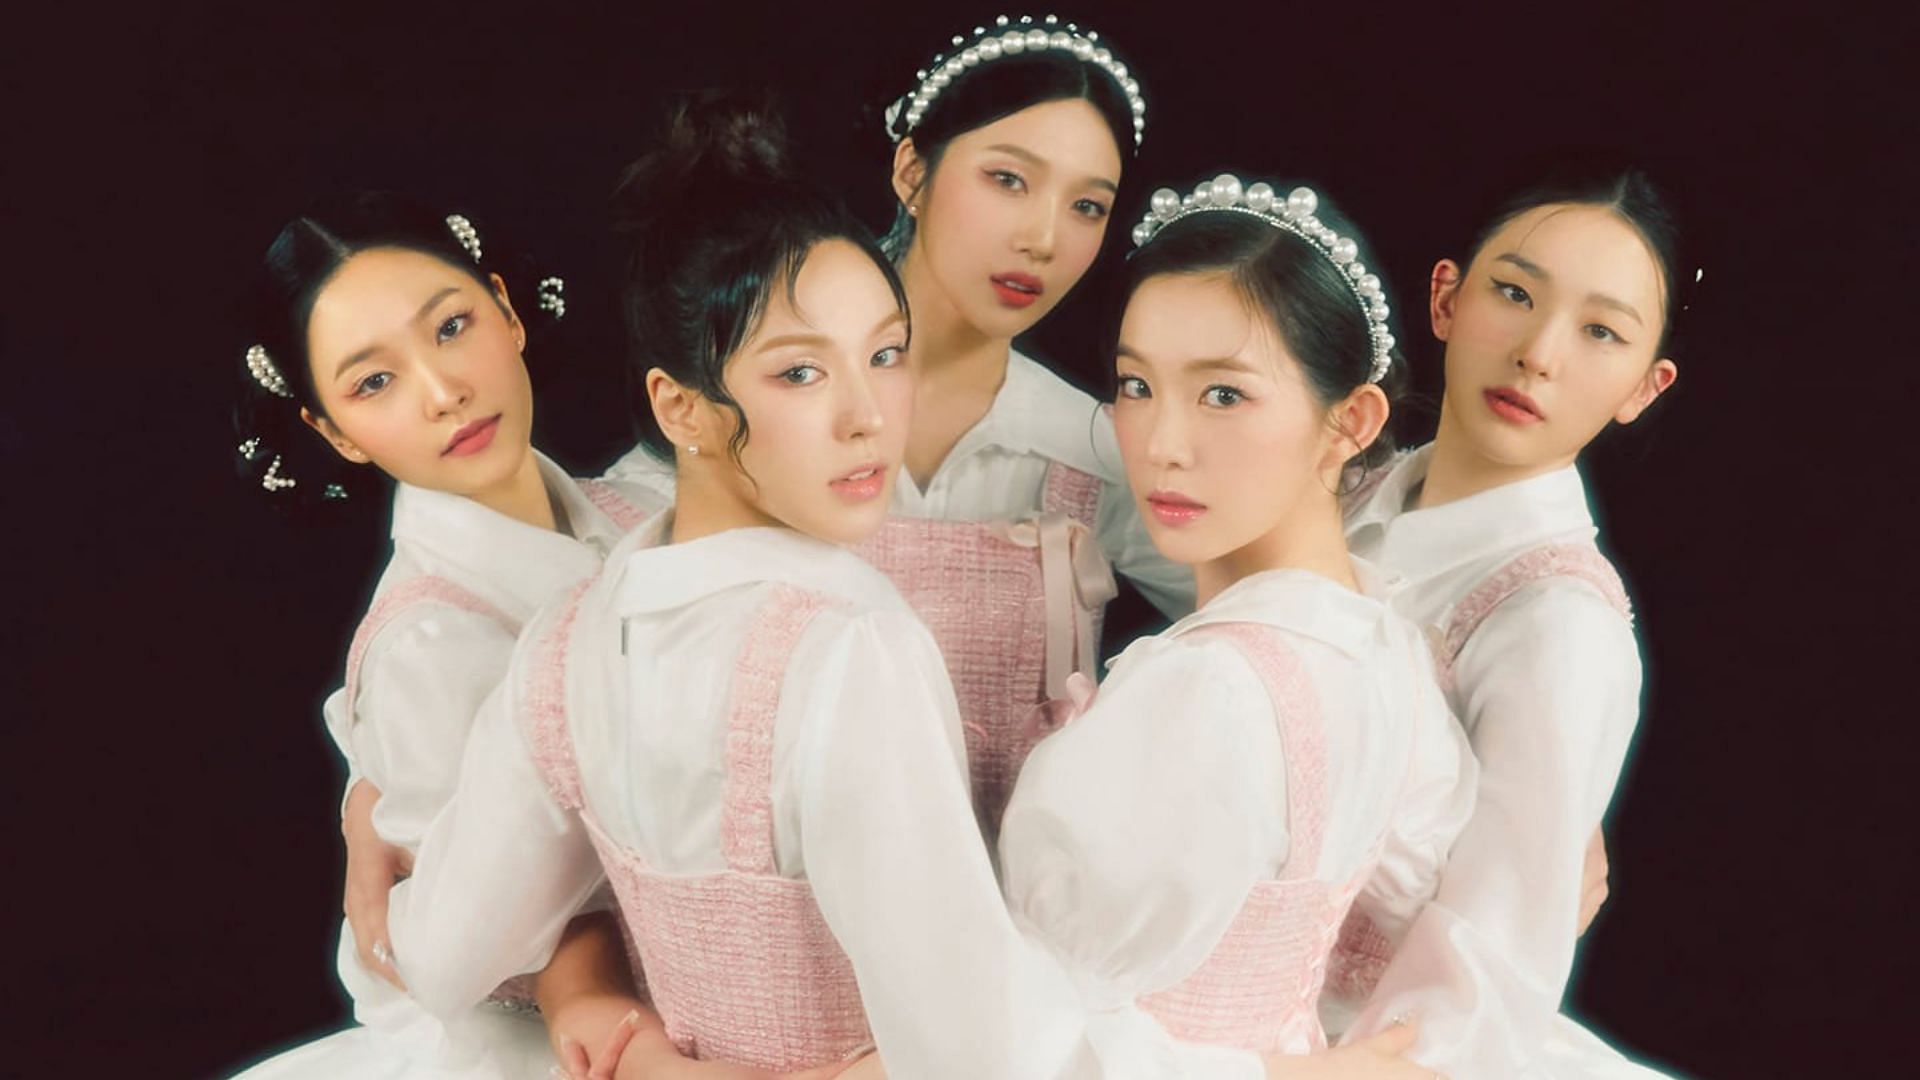 A still of the five-member girl group Red Velvet (Image via Twitter/@RVsmtown)